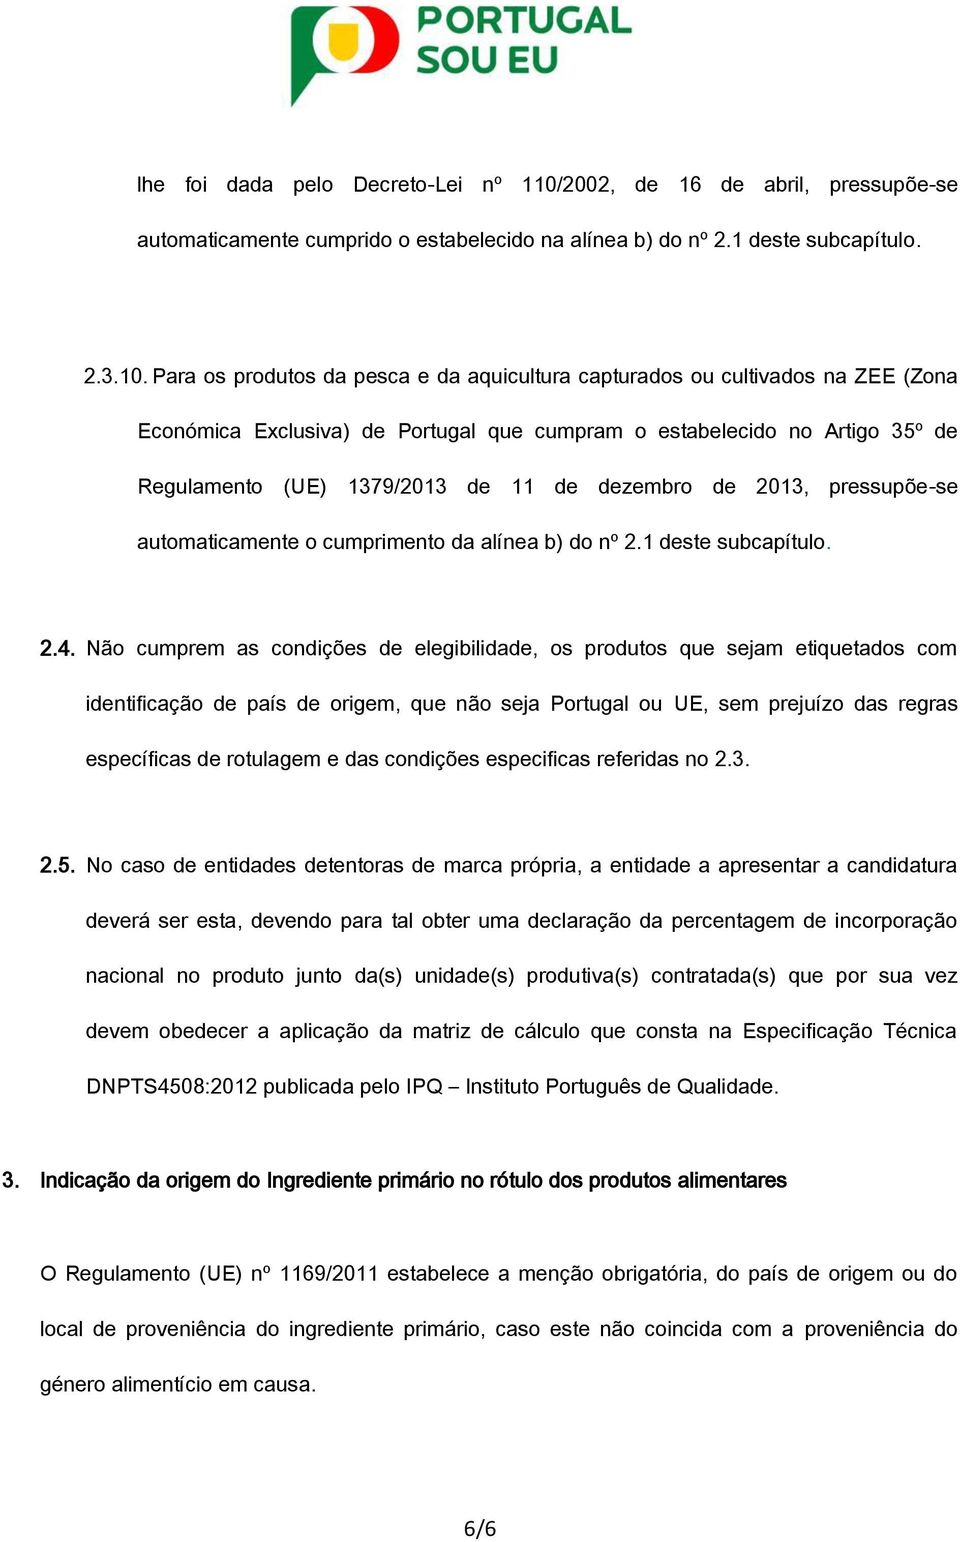 Para os produtos da pesca e da aquicultura capturados ou cultivados na ZEE (Zona Económica Exclusiva) de Portugal que cumpram o estabelecido no Artigo 35º de Regulamento (UE) 1379/2013 de 11 de